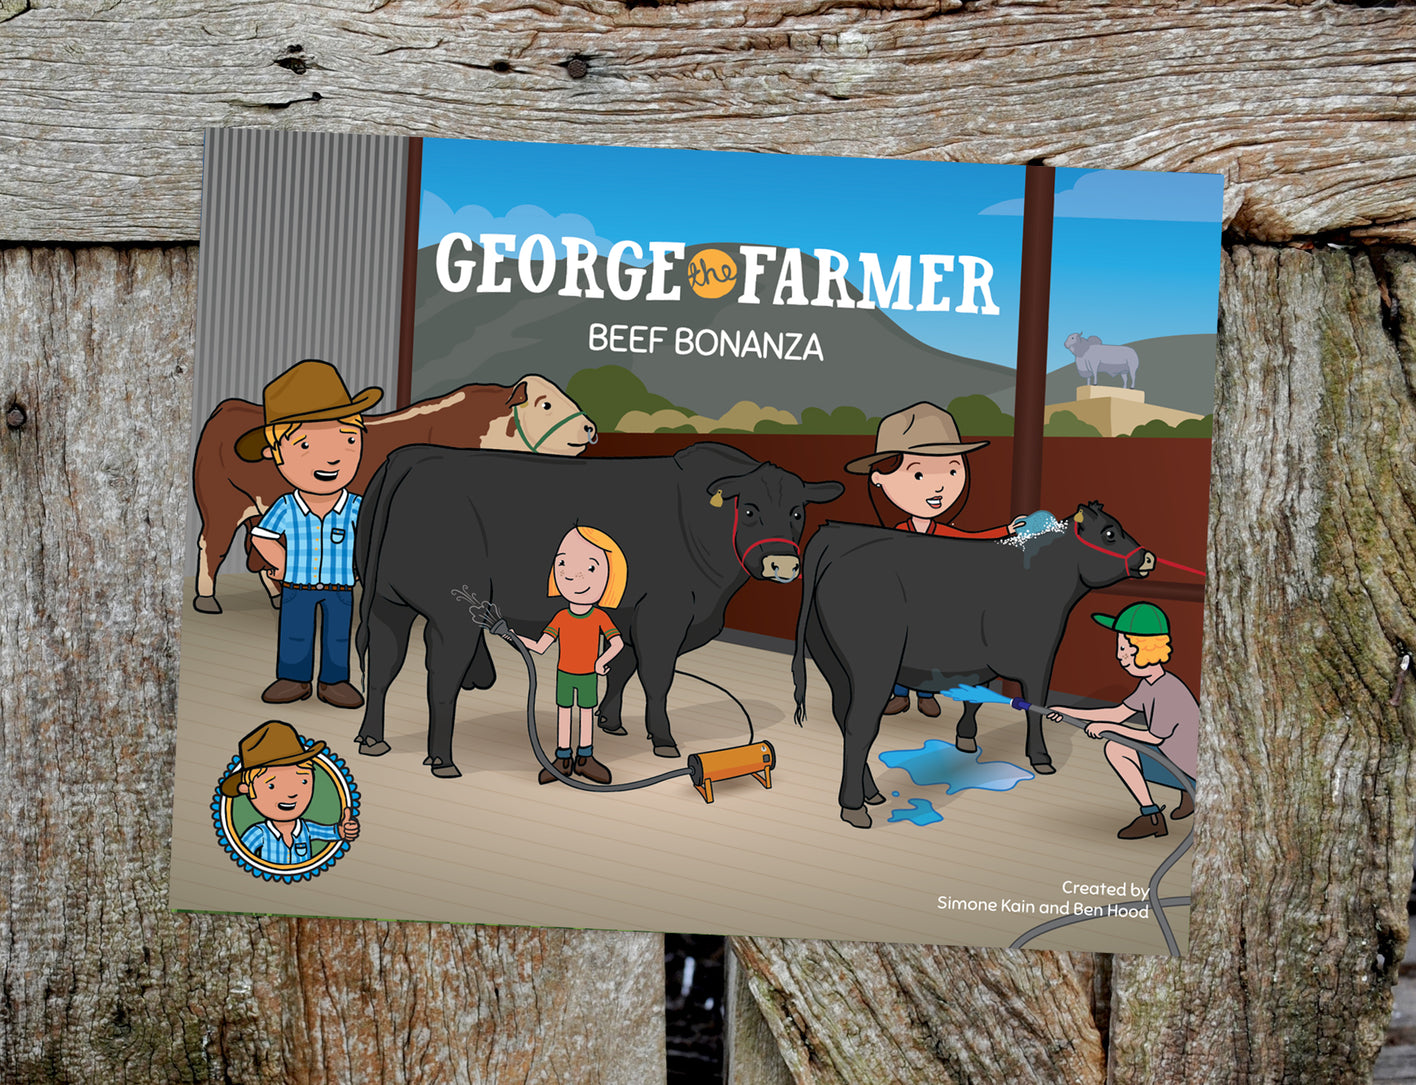 George the Farmer Beef Bonanza Picture Book